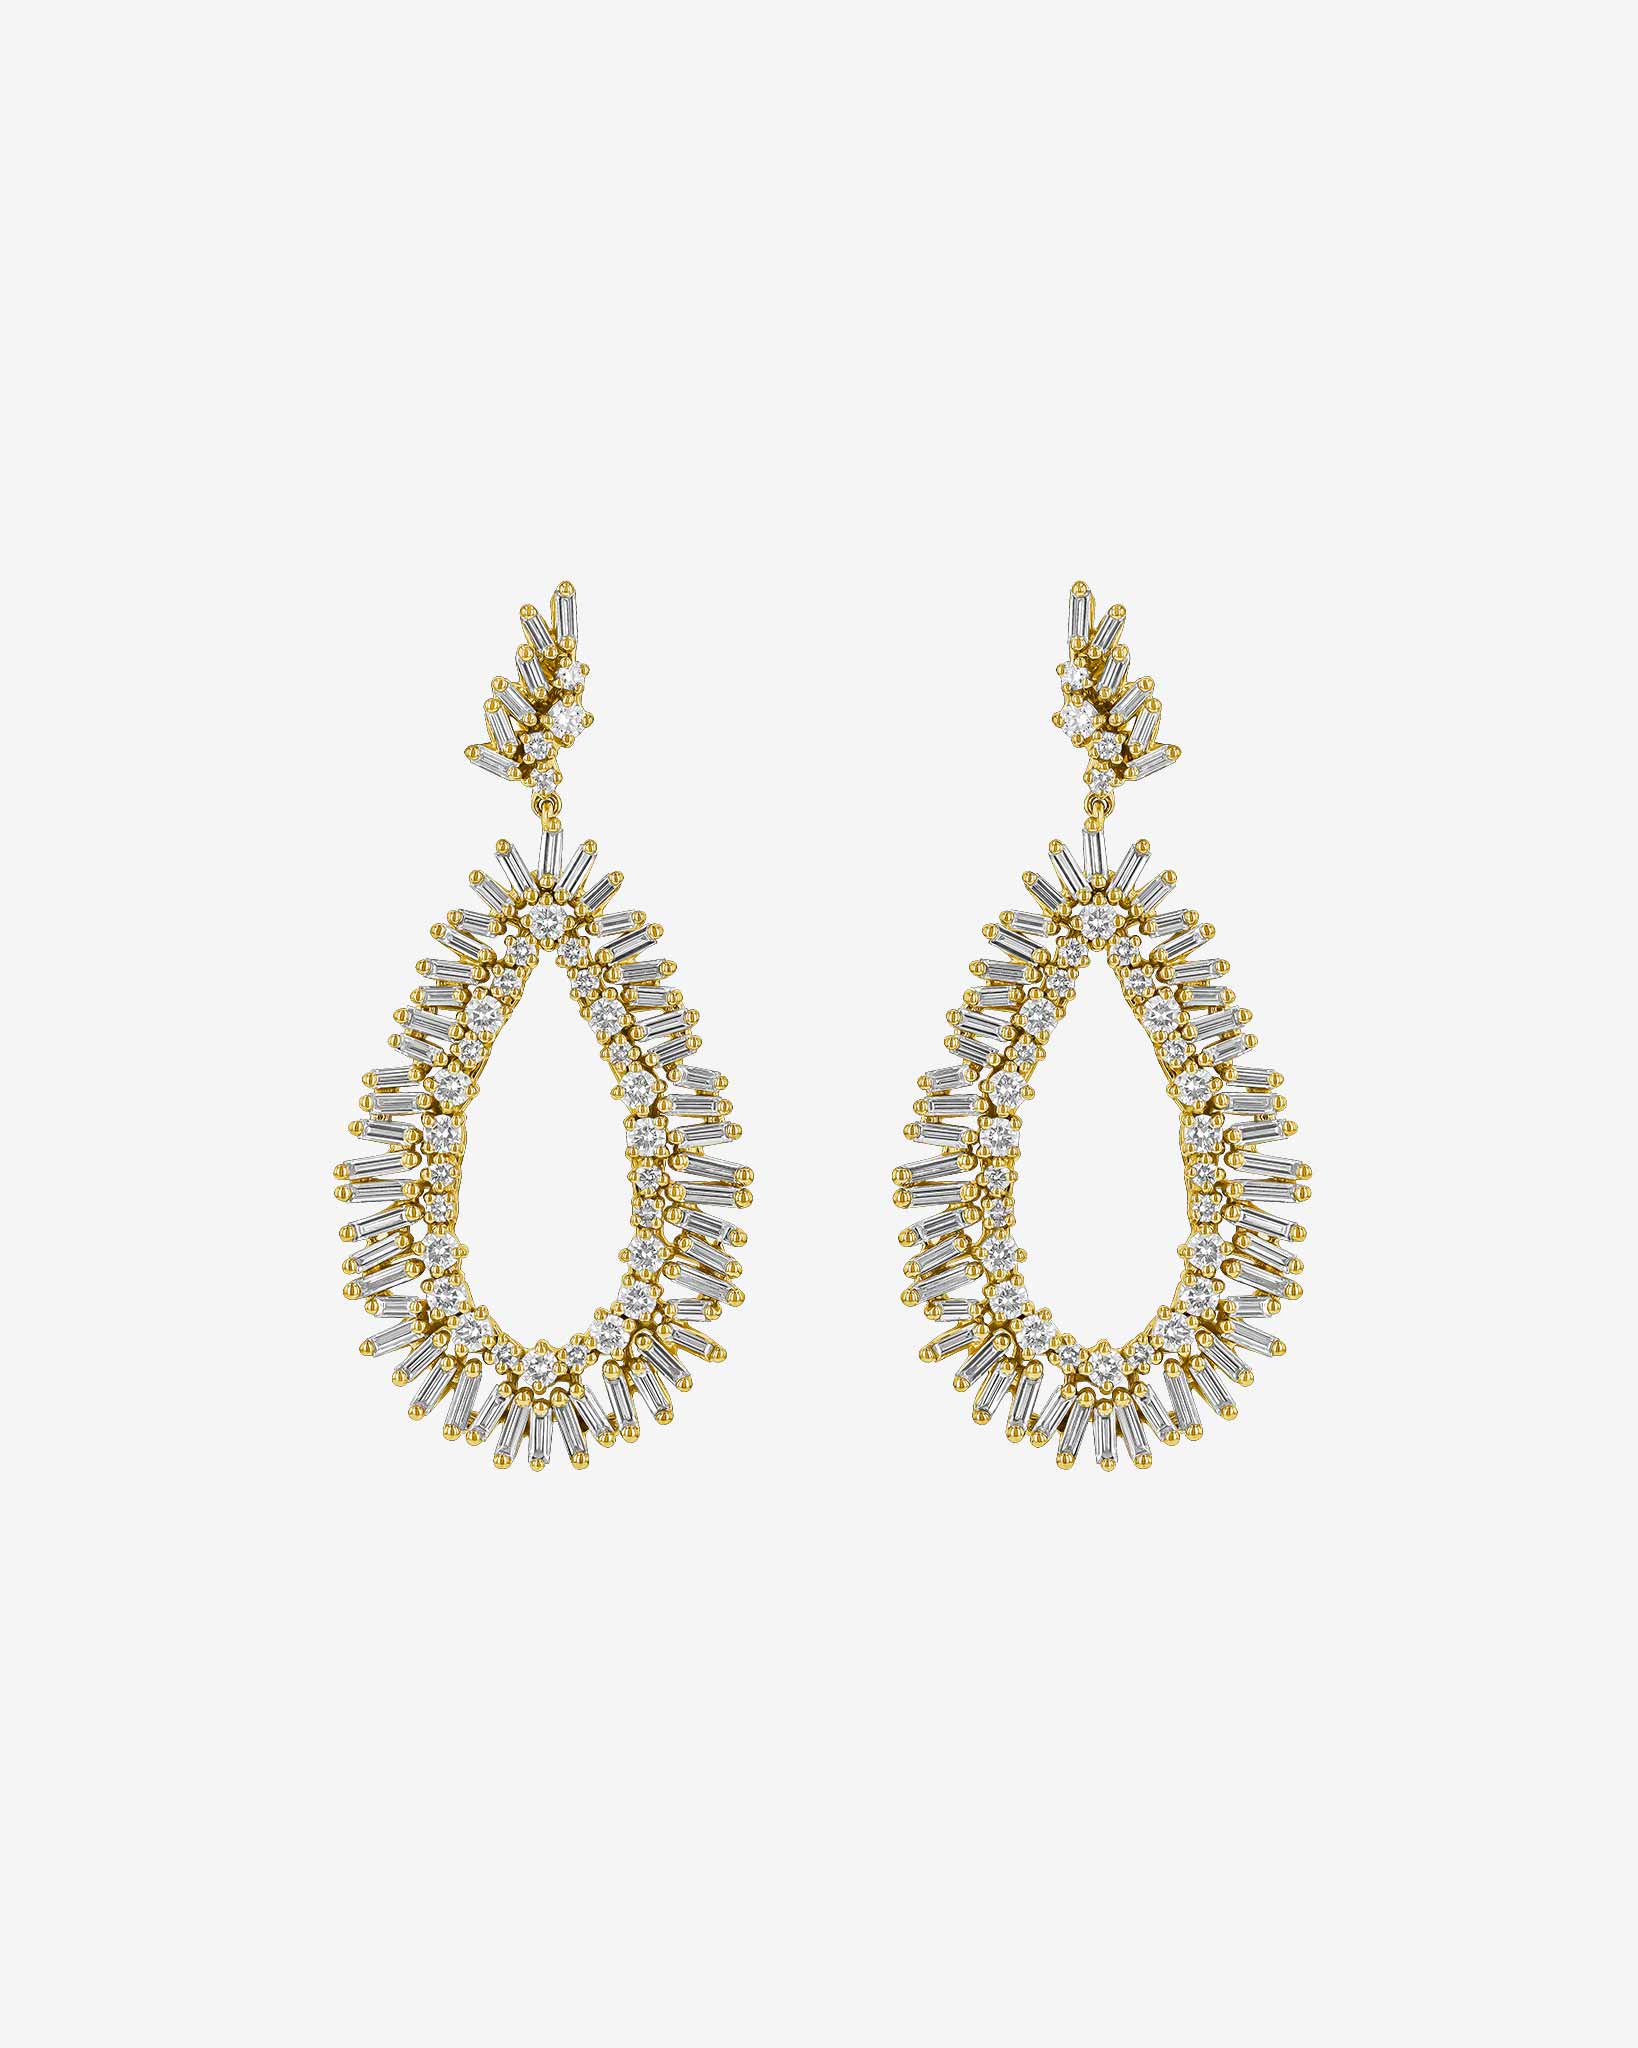 Suzanne Kalan Classic Diamond Midi Tear Drop Earrings in 18k yellow gold